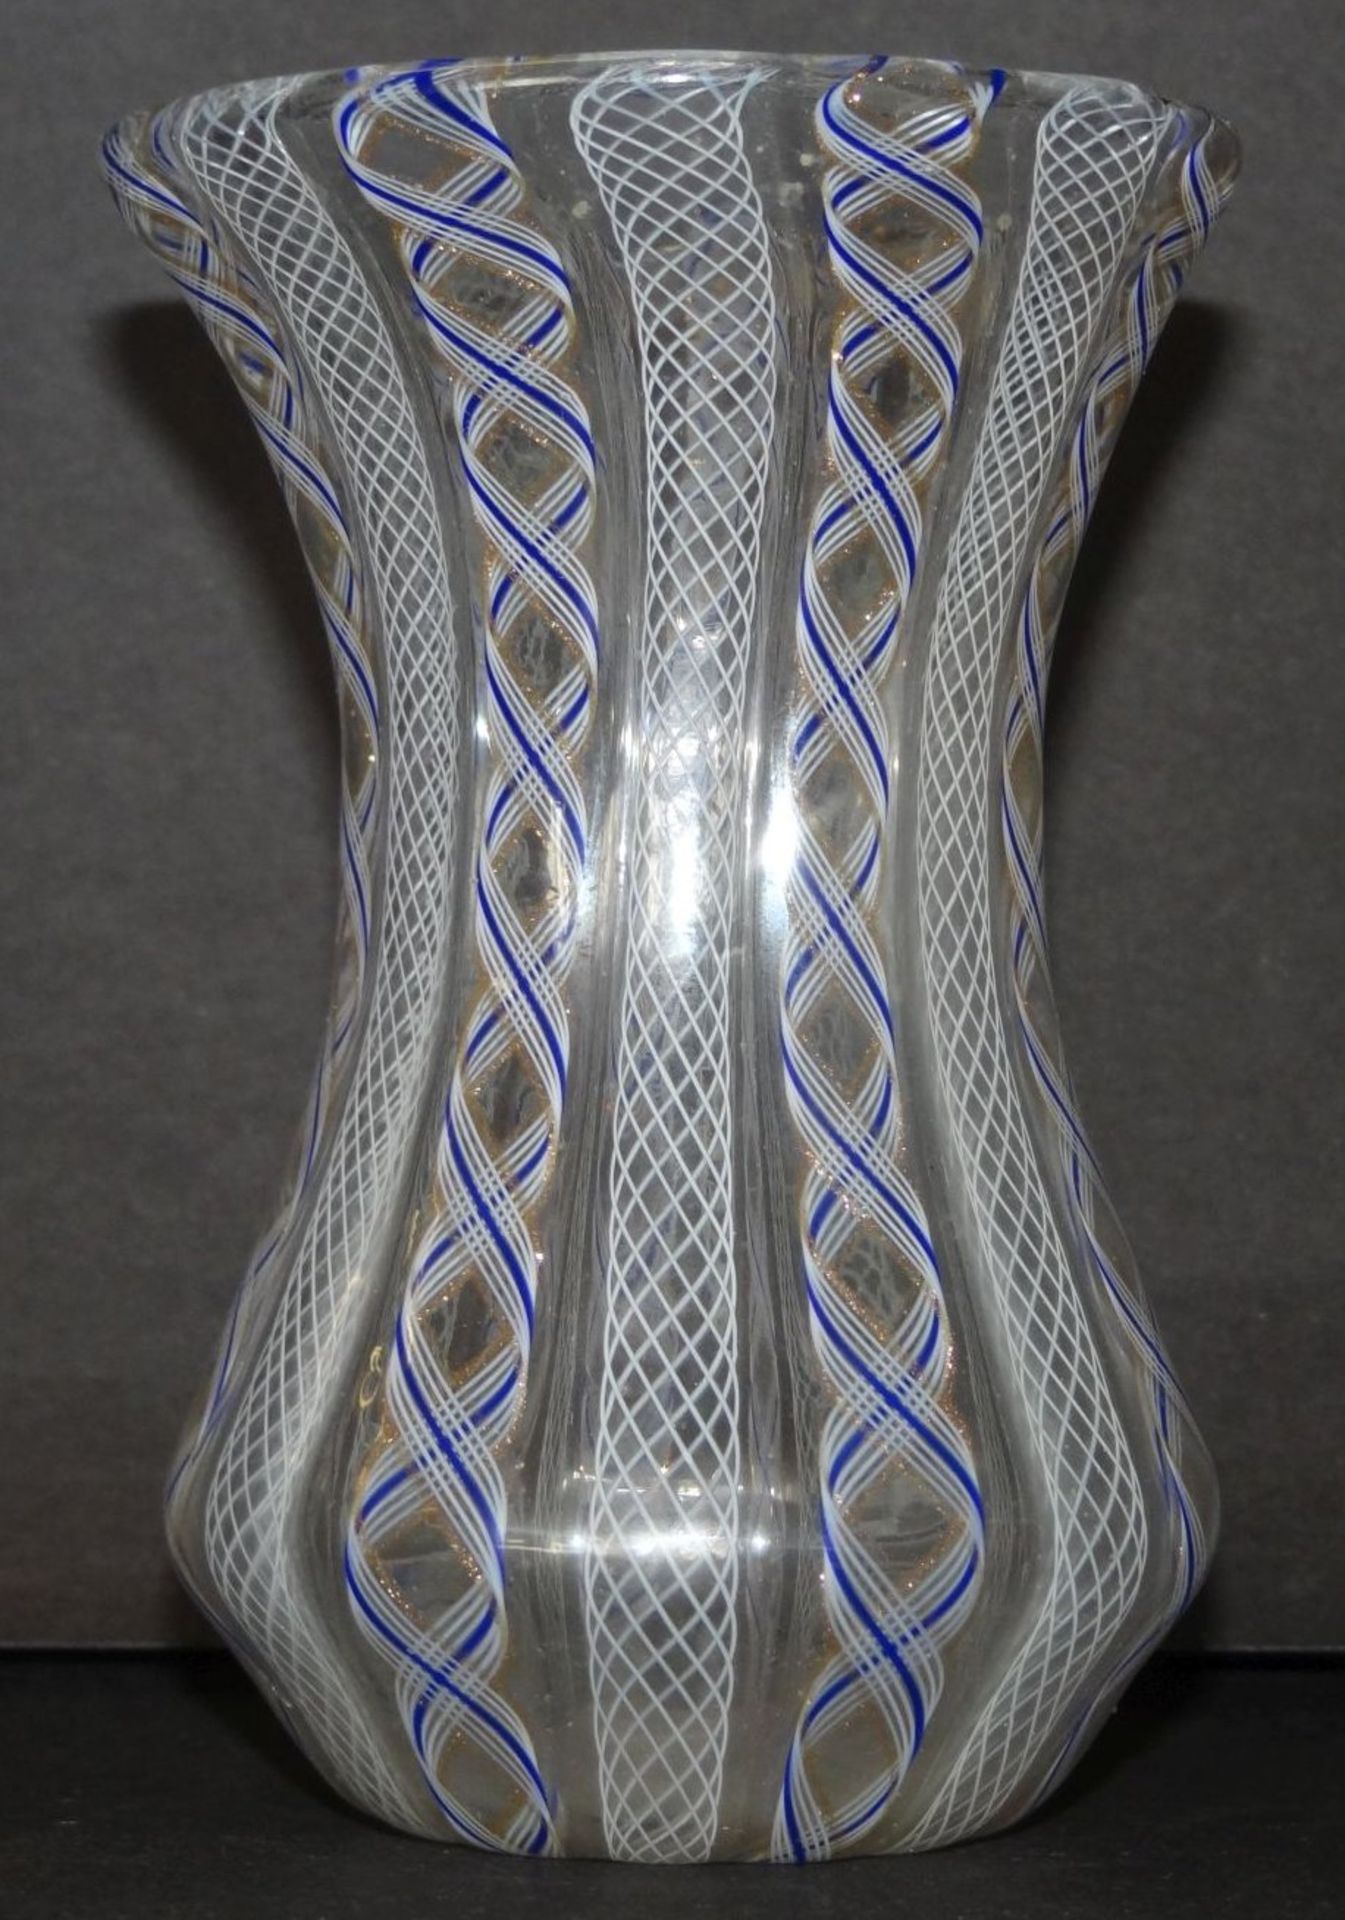 kl. Vase, Fadenglas mit Netzstuktur, blau/weiss, H-10,5 cm - Bild 4 aus 4